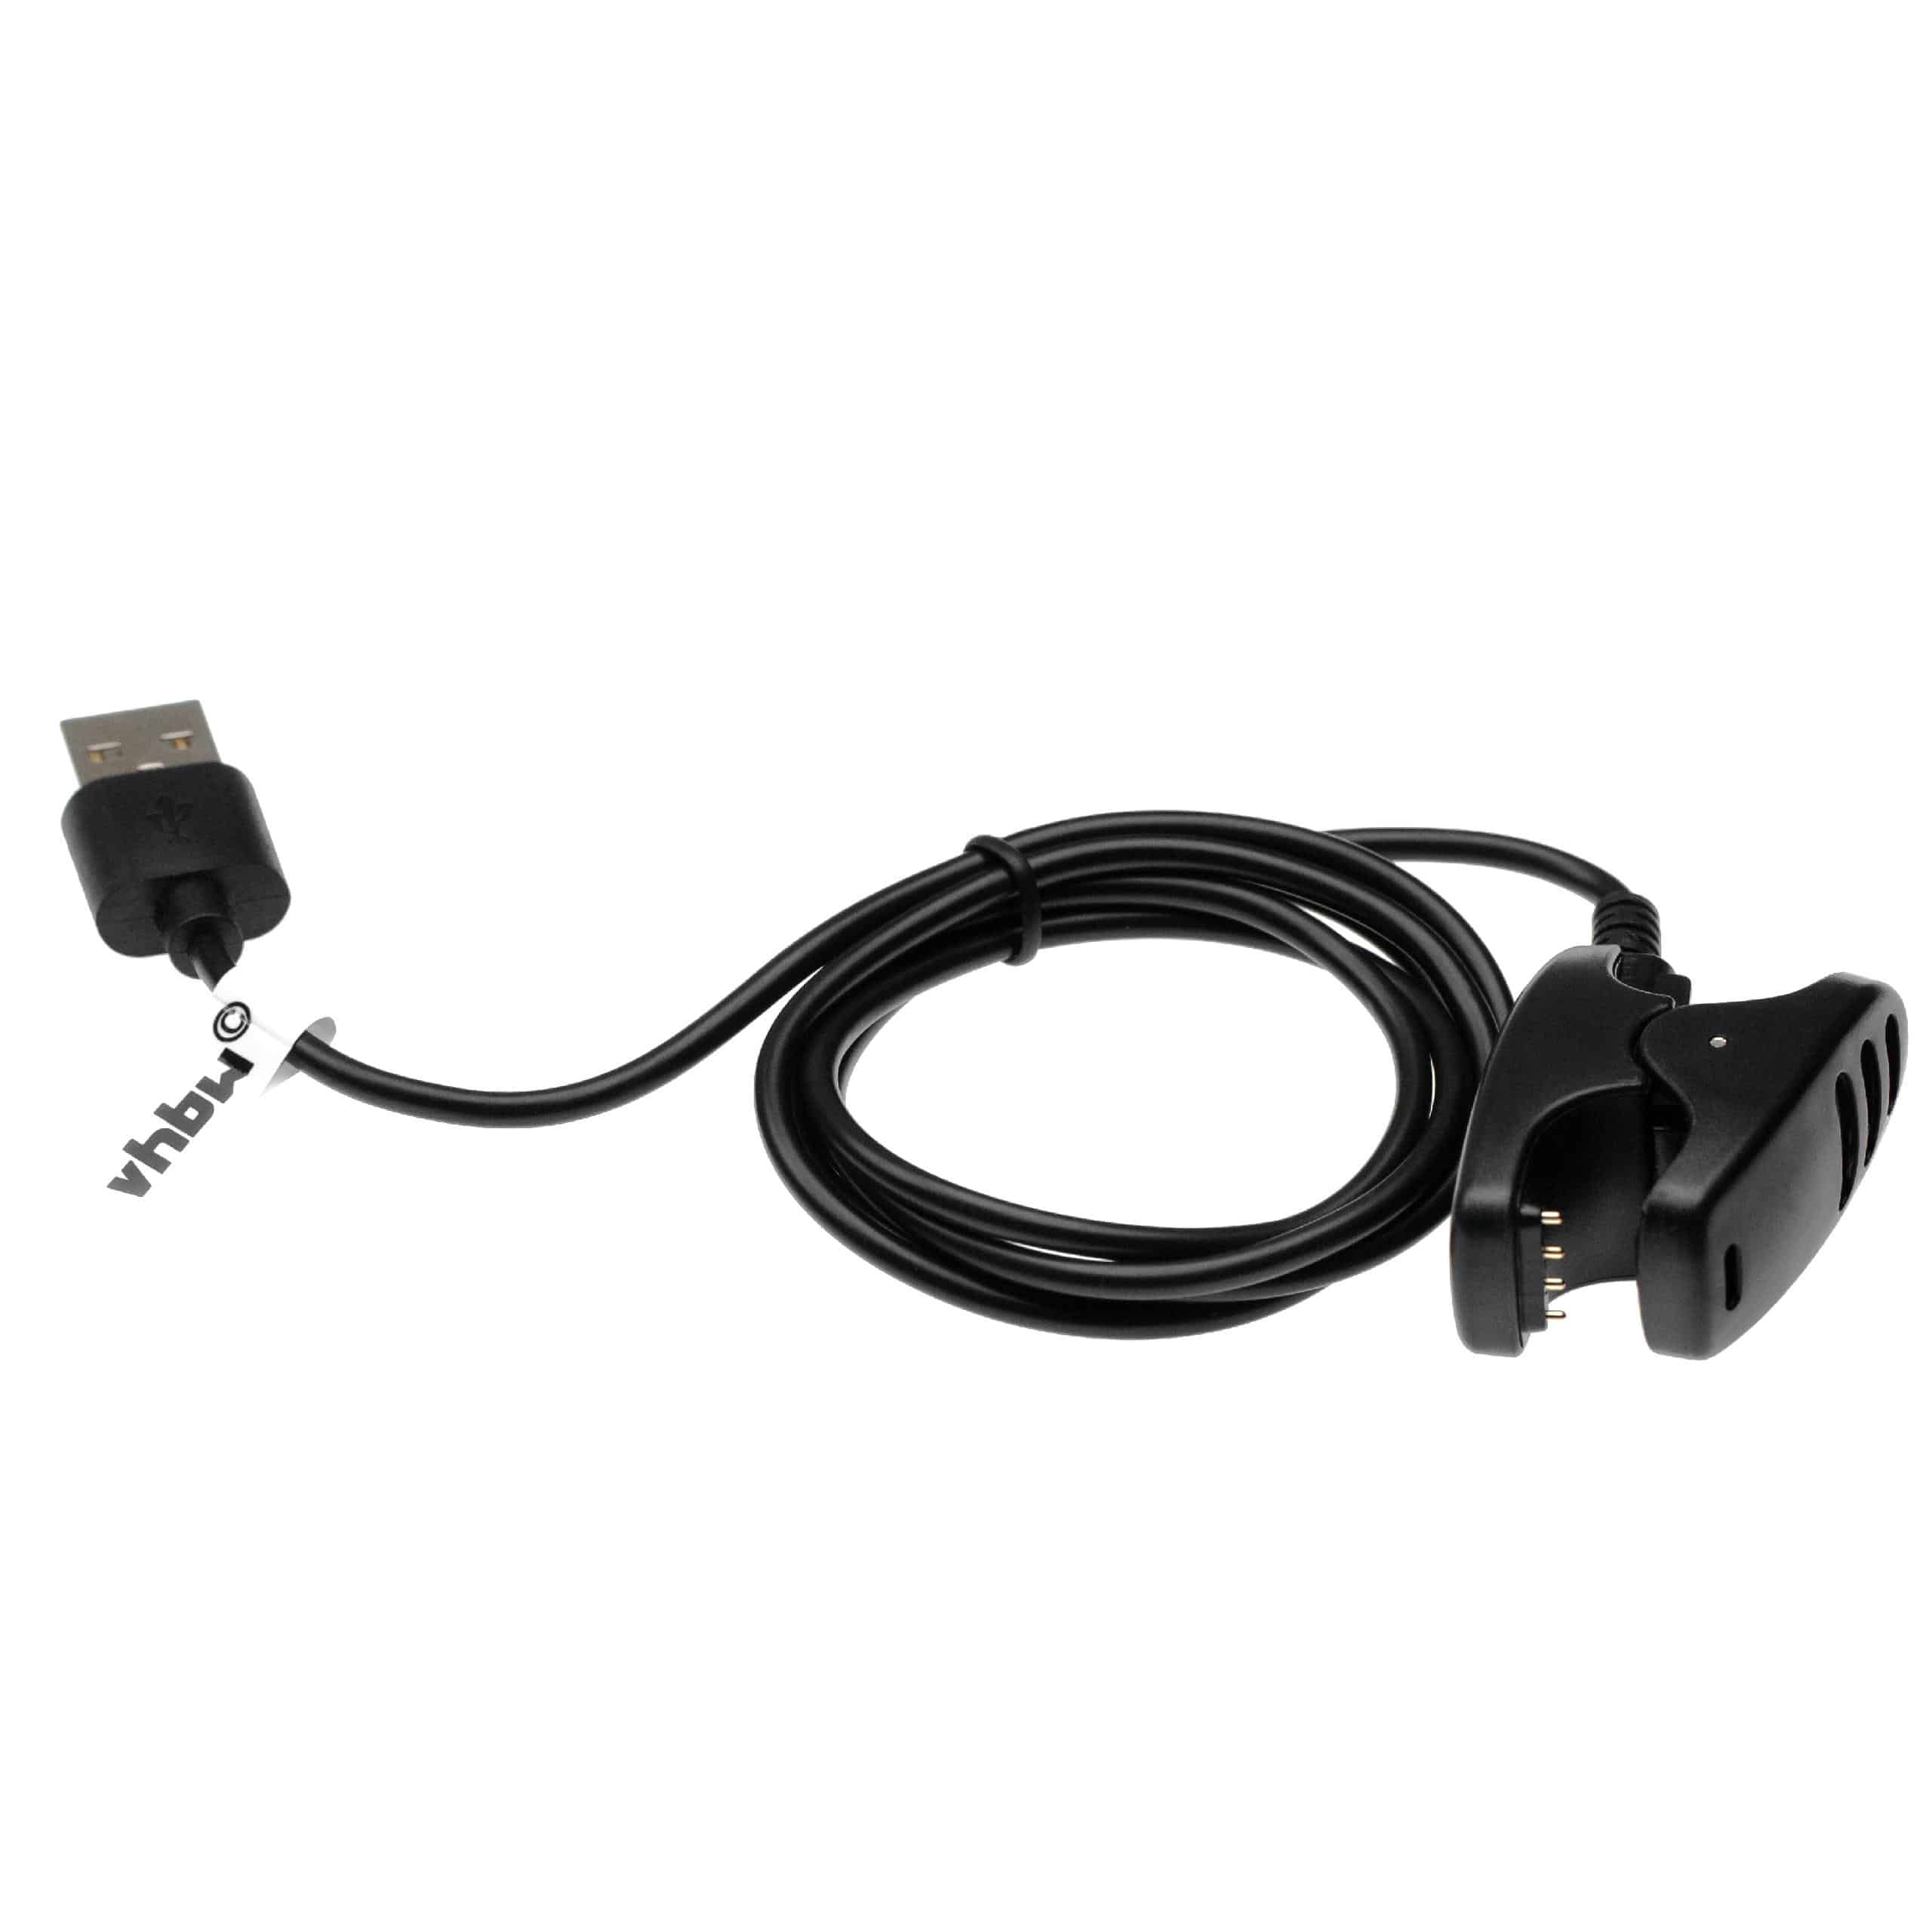 Ladekabel passend für Suunto 3 Fitness - 96 cm Kabel, USB-Stecker